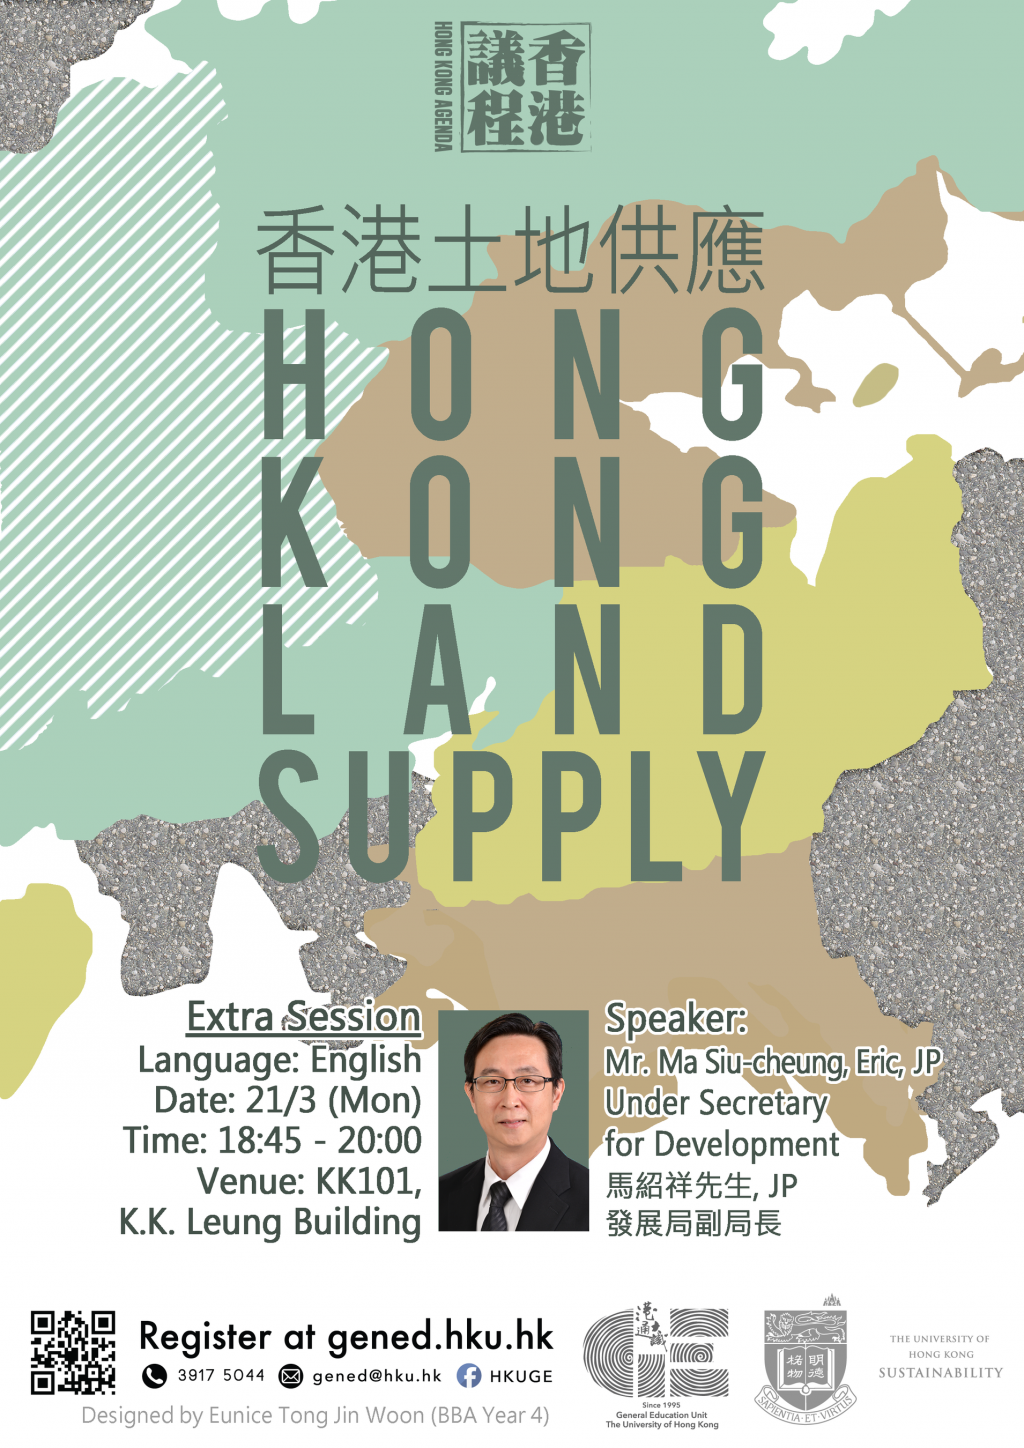 Hong Kong Land Supply - Mr. Ma Siu-cheung, Eric, JP, Under Secretary for Development